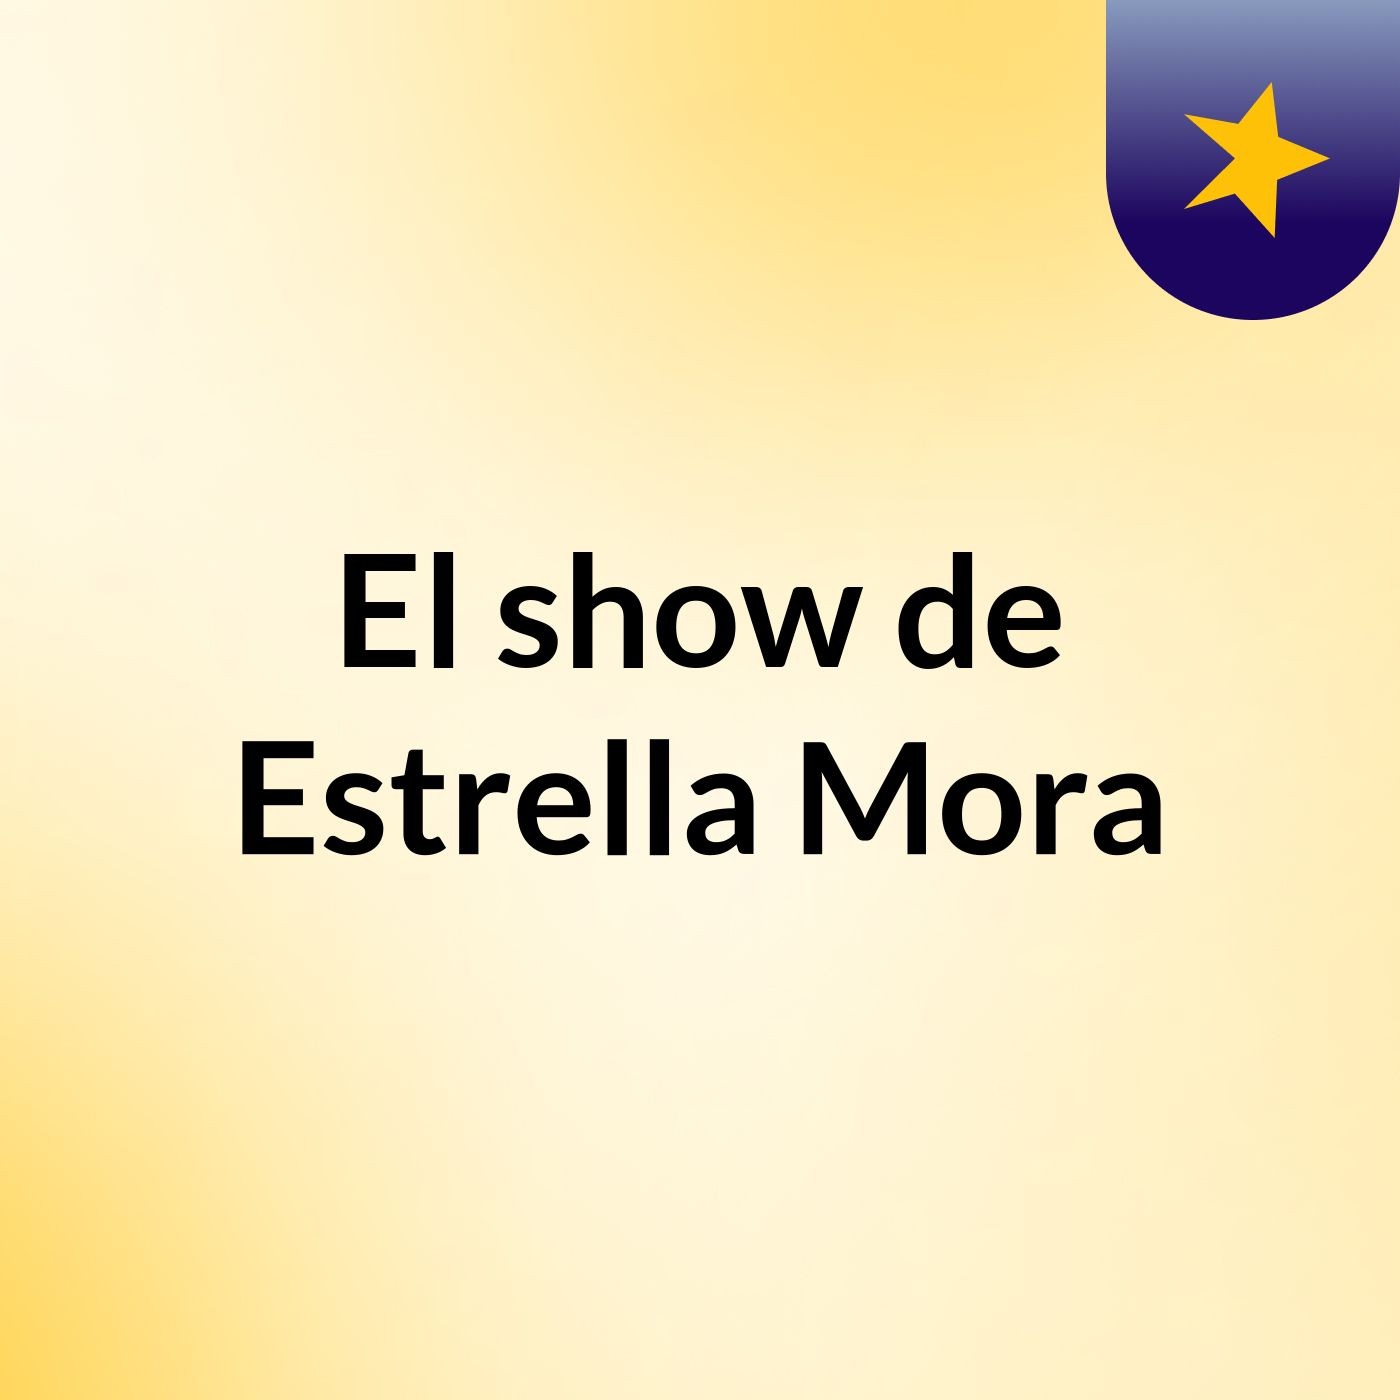 El show de Estrella Mora